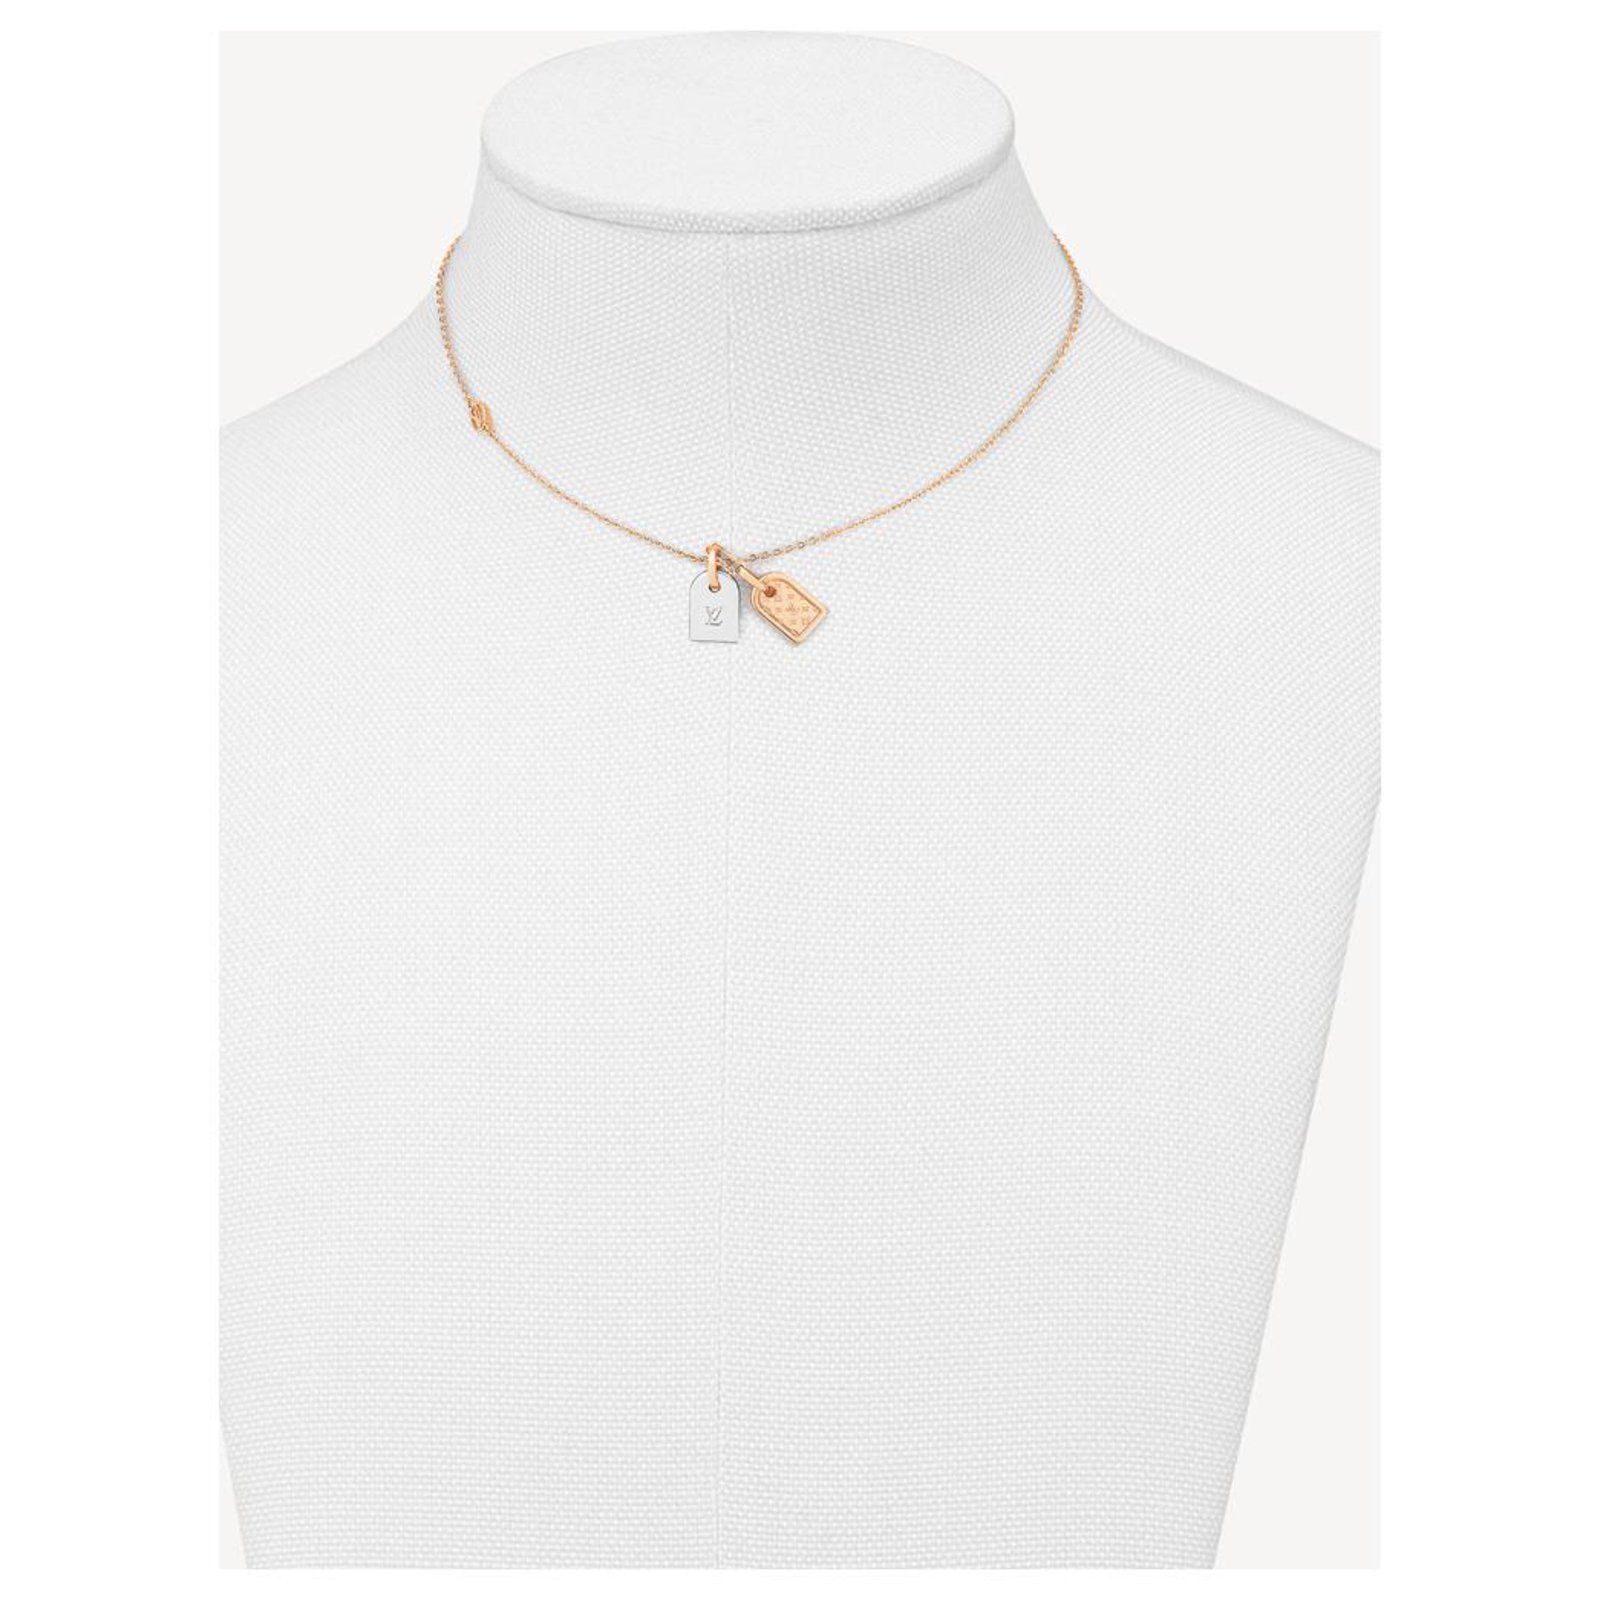 Louis Vuitton Mens Necklaces & Chokers, Silver